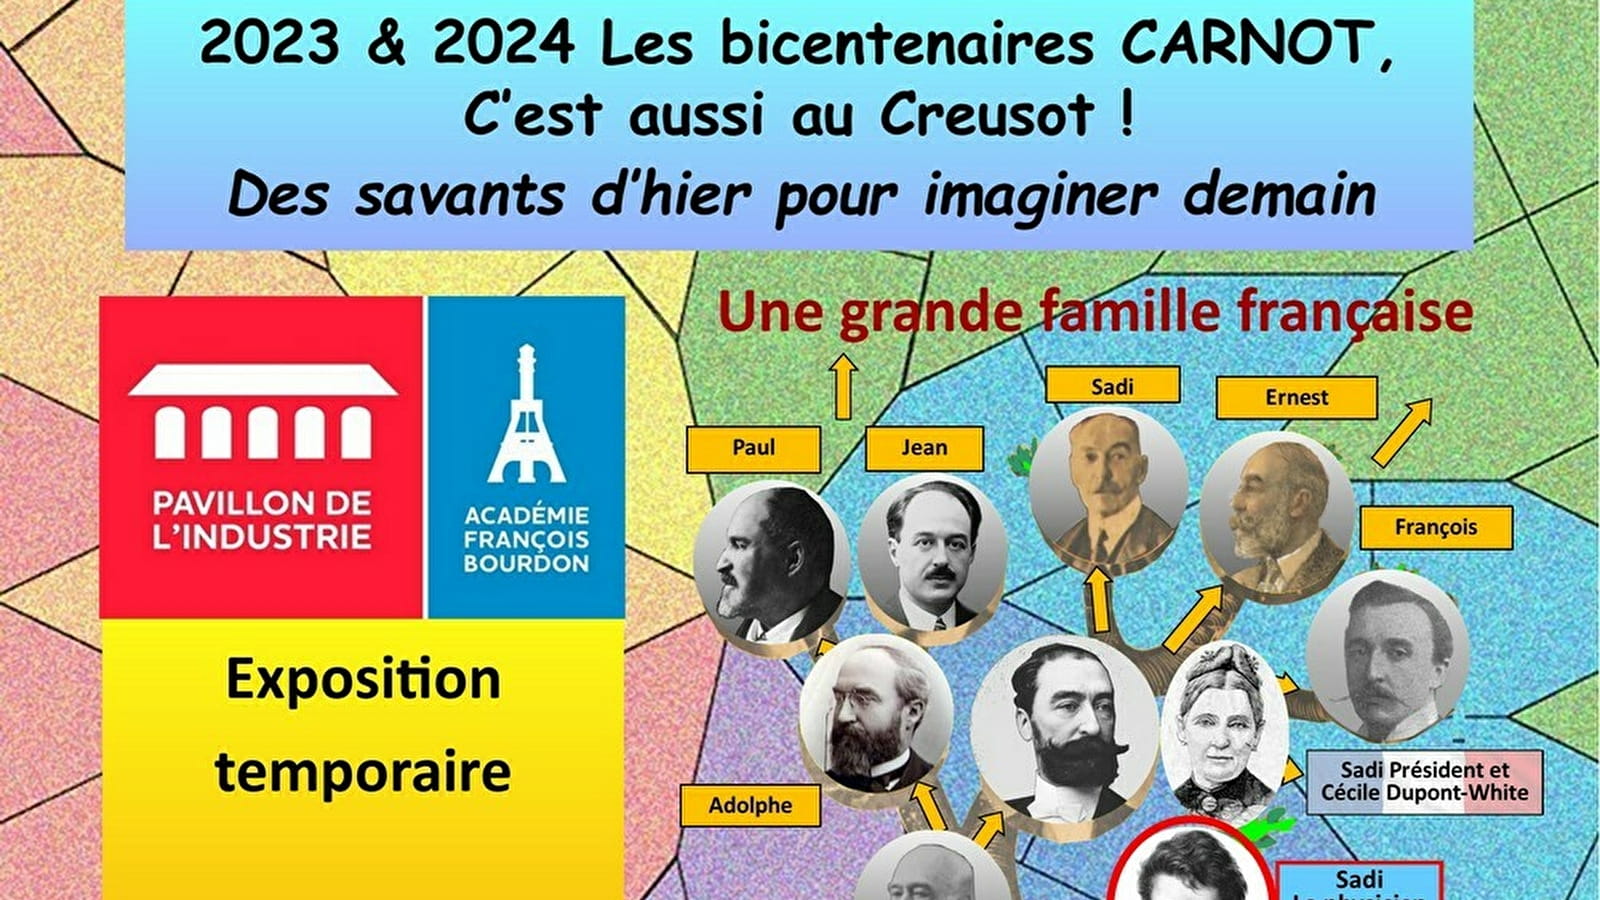 Exposition temporaire : "2023-24 - Les bicentenaires Carnot,... Du 6 mai au 31 oct 2024